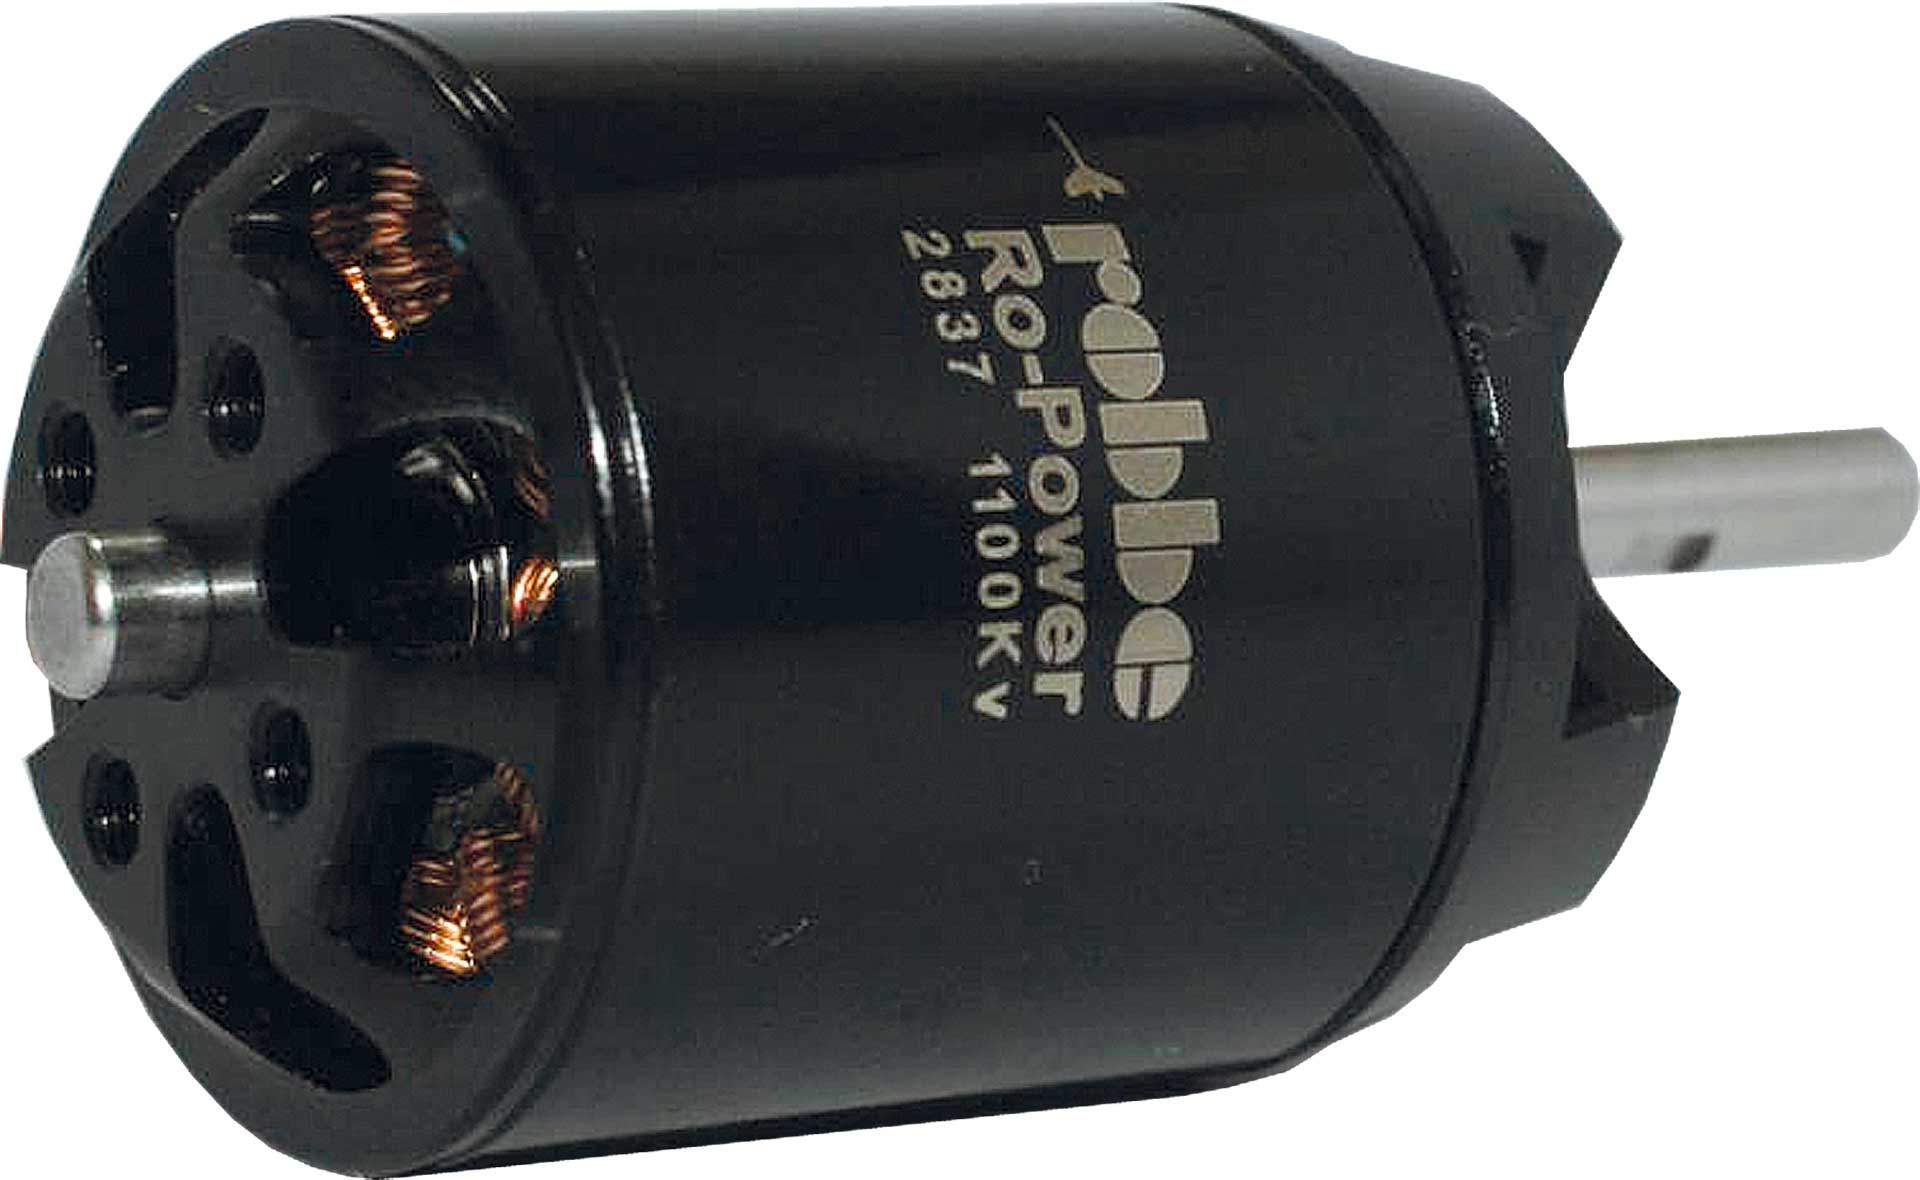 Robbe Modellsport RO-POWER TORQUE 2837 1100 K/V Brushless Motor